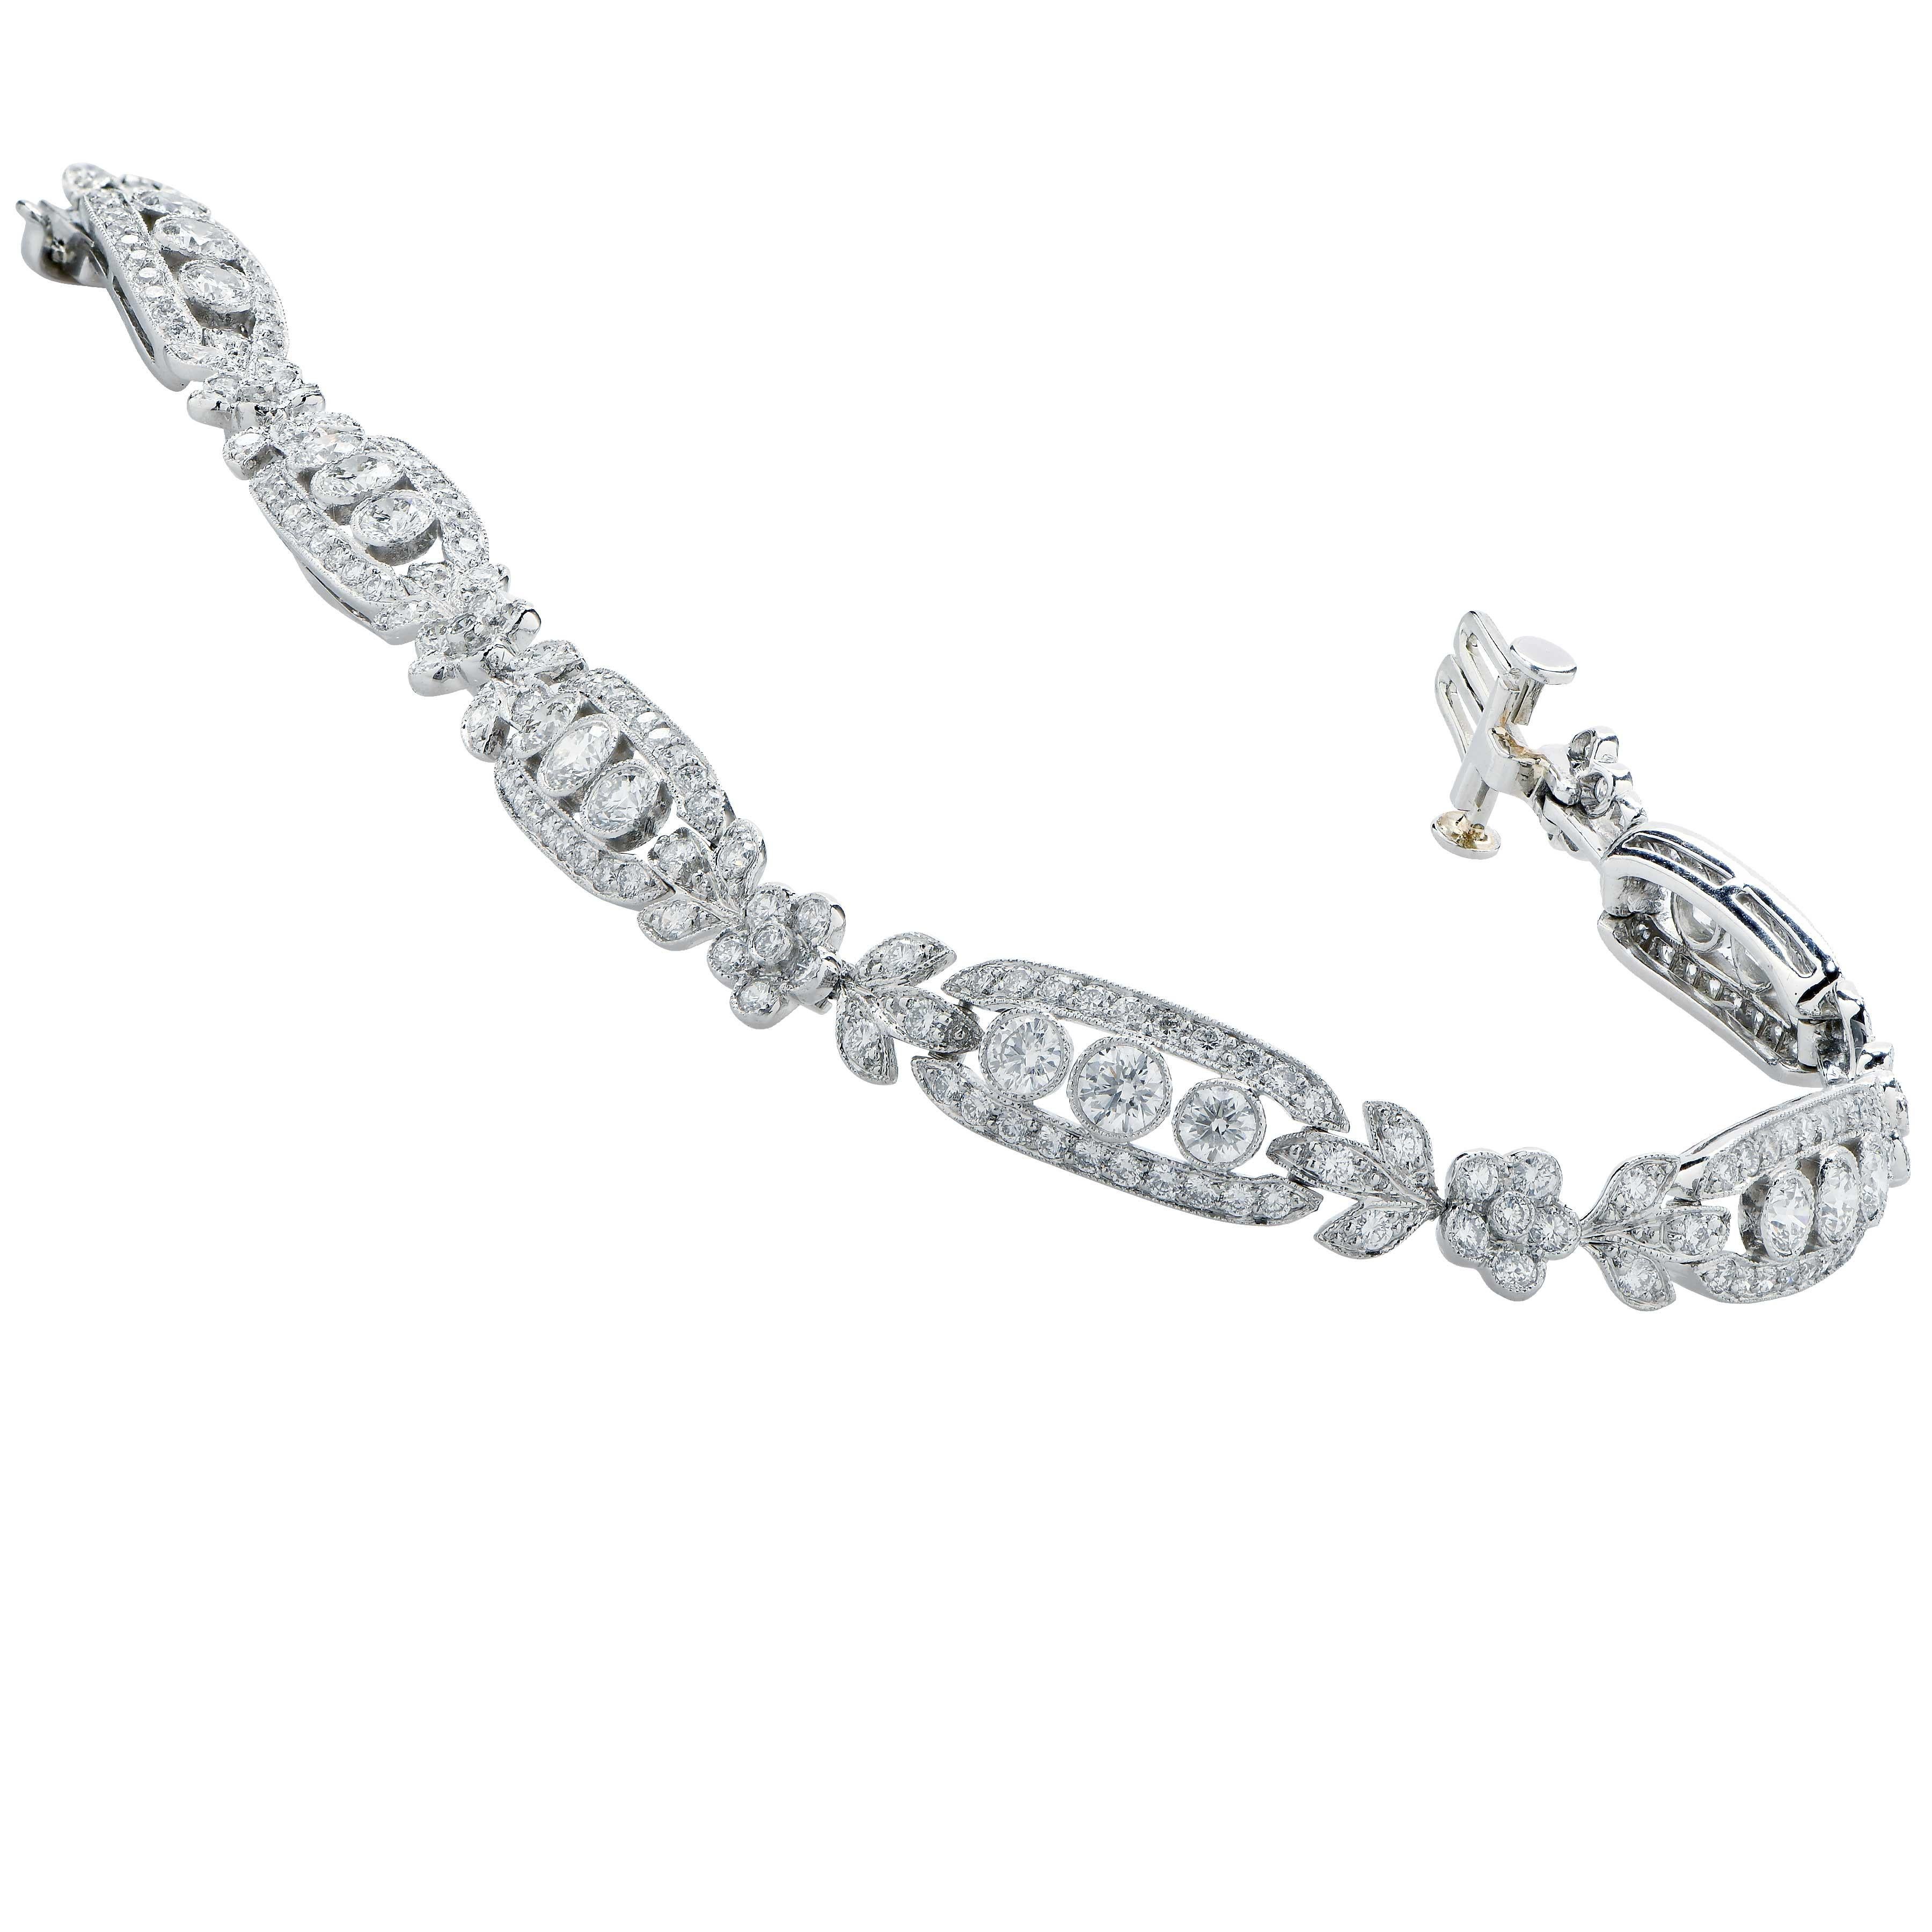 Bracelet de diamants Tiffany and Company en platine.
Ce magnifique bracelet comporte 240 diamants ronds de taille brillant d'un poids total estimé à 4,1 carats.
Poids : 20,2 grammes